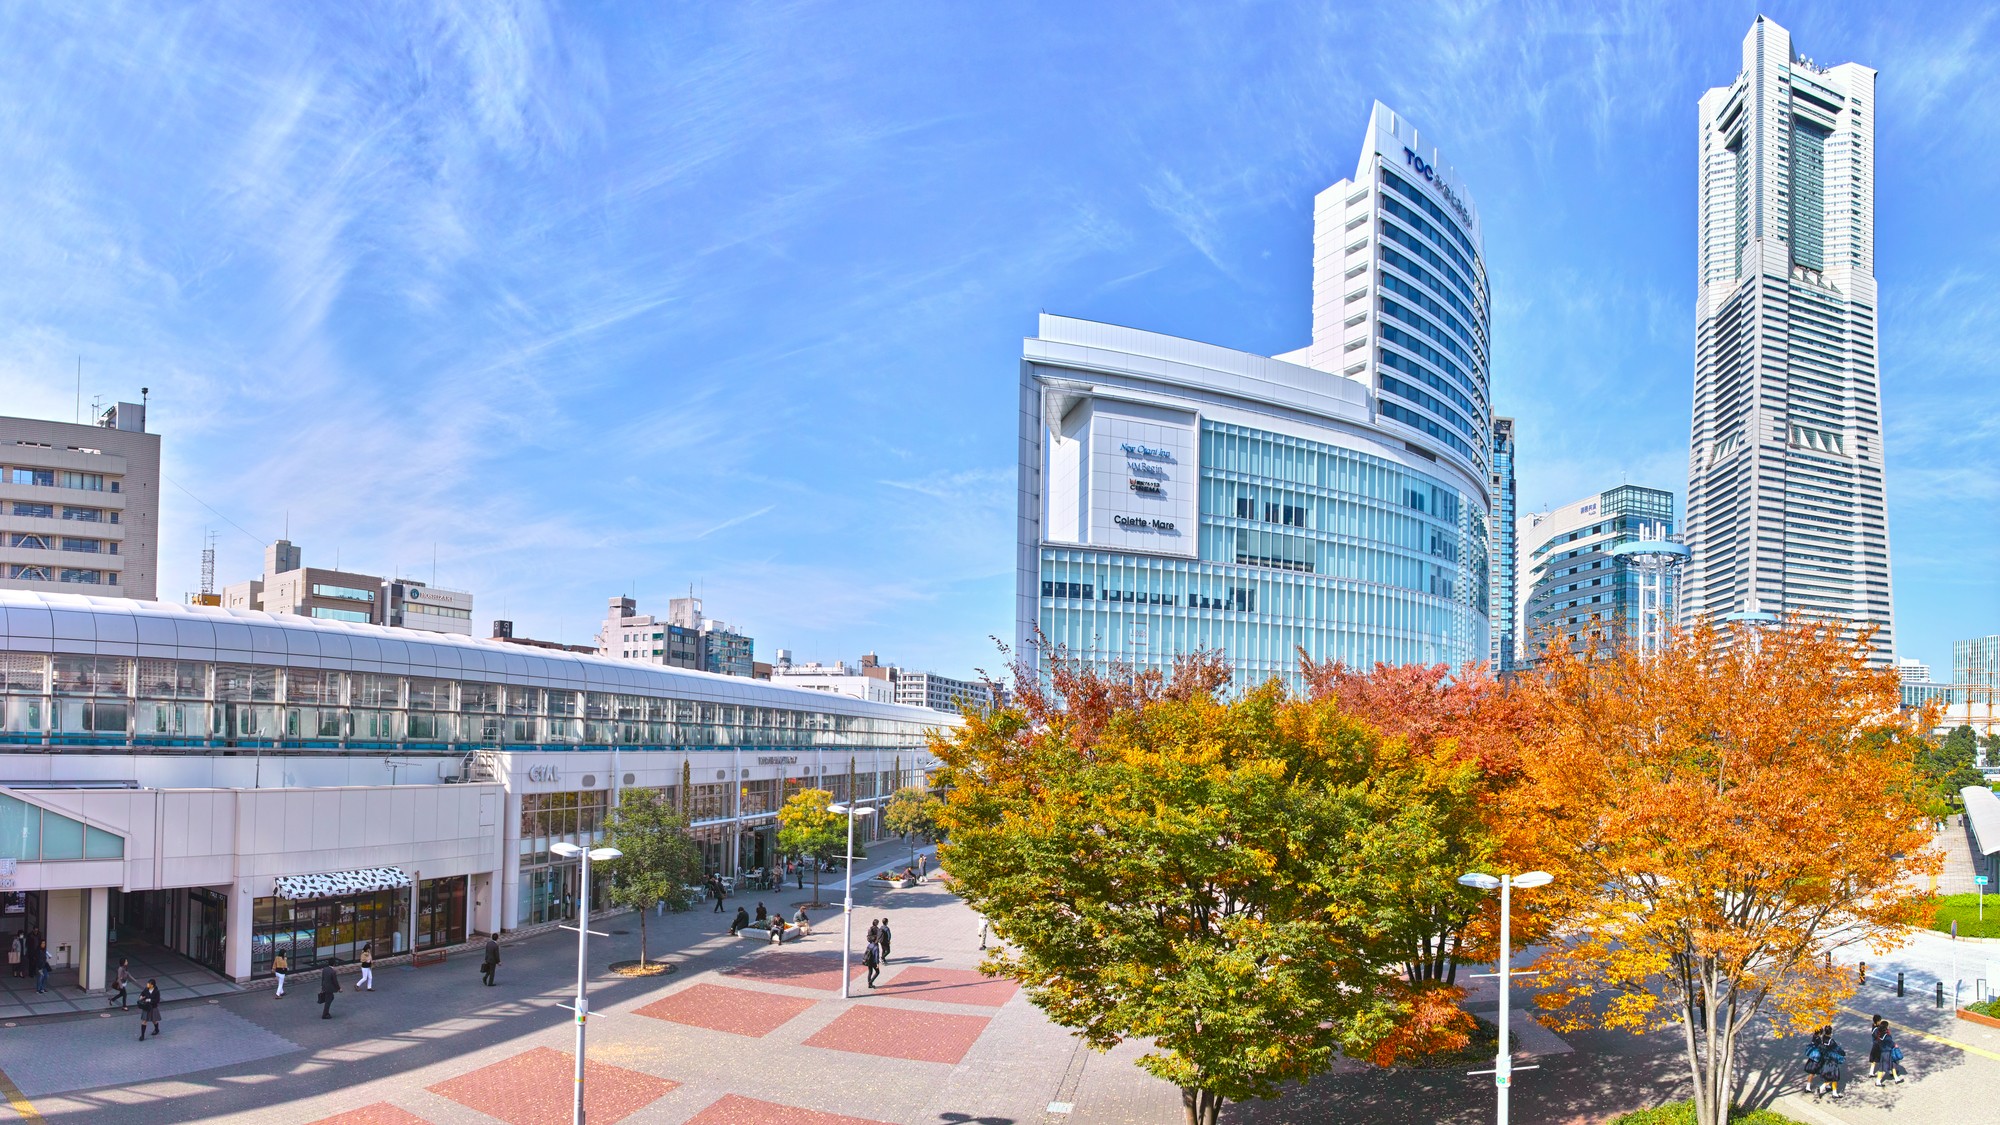 初代 横浜駅だった 桜木町 が 横浜 の駅名を奪われたワケ 富裕層向け資産防衛メディア 幻冬舎ゴールドオンライン